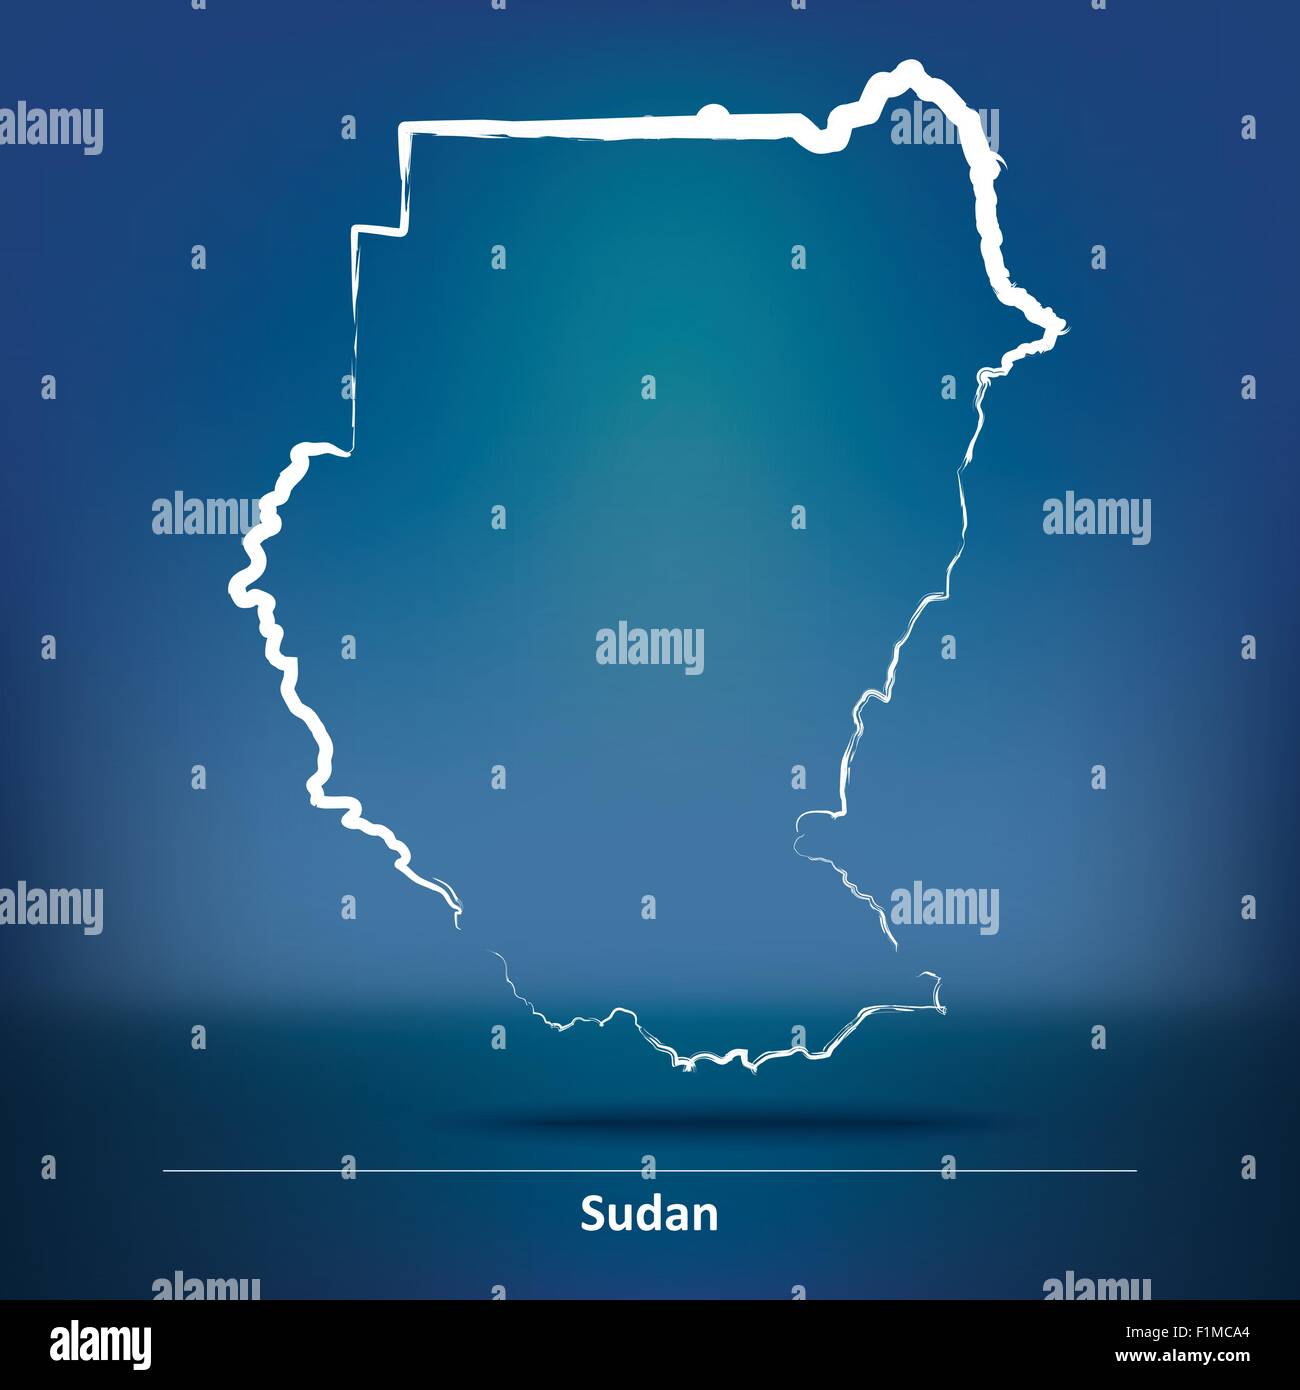 Karte von Sudan - Vektor-Illustration Doodle Stock Vektor